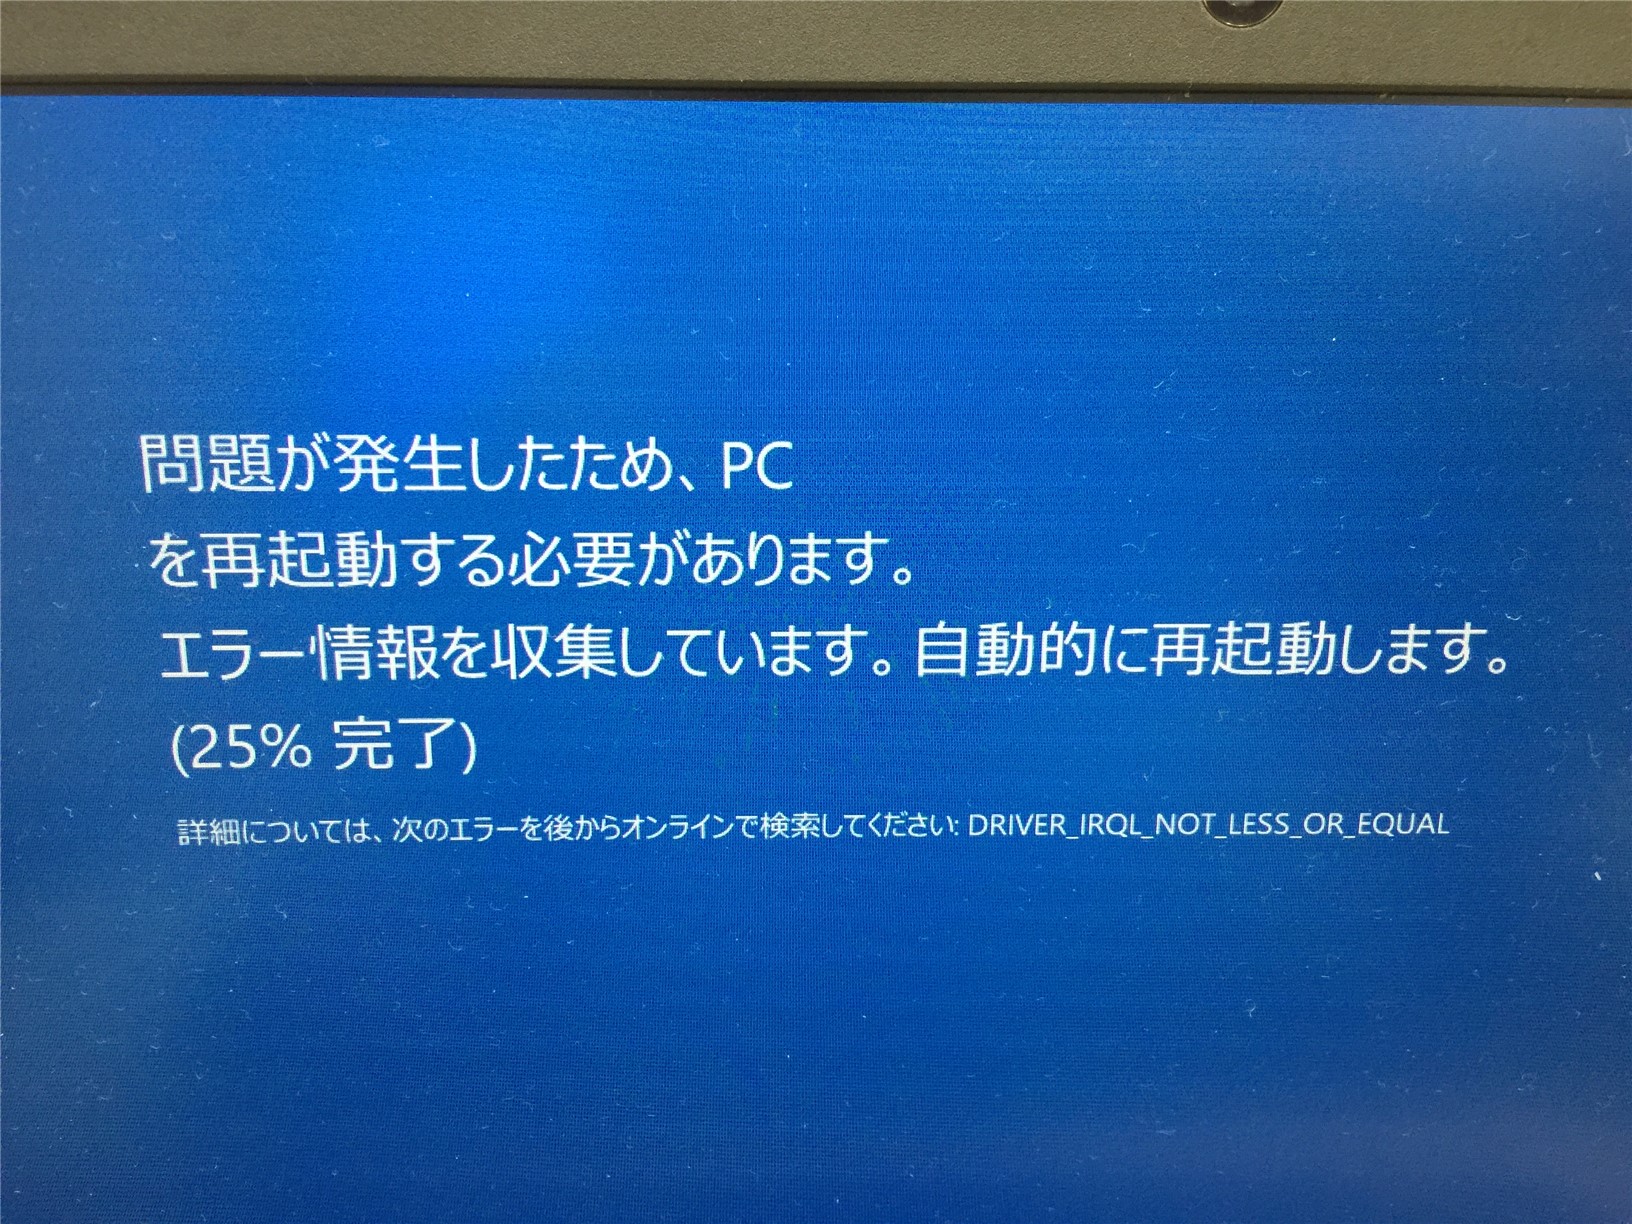 Windows 10 Driver Irql Not Less Or Equal ブルースクリーン